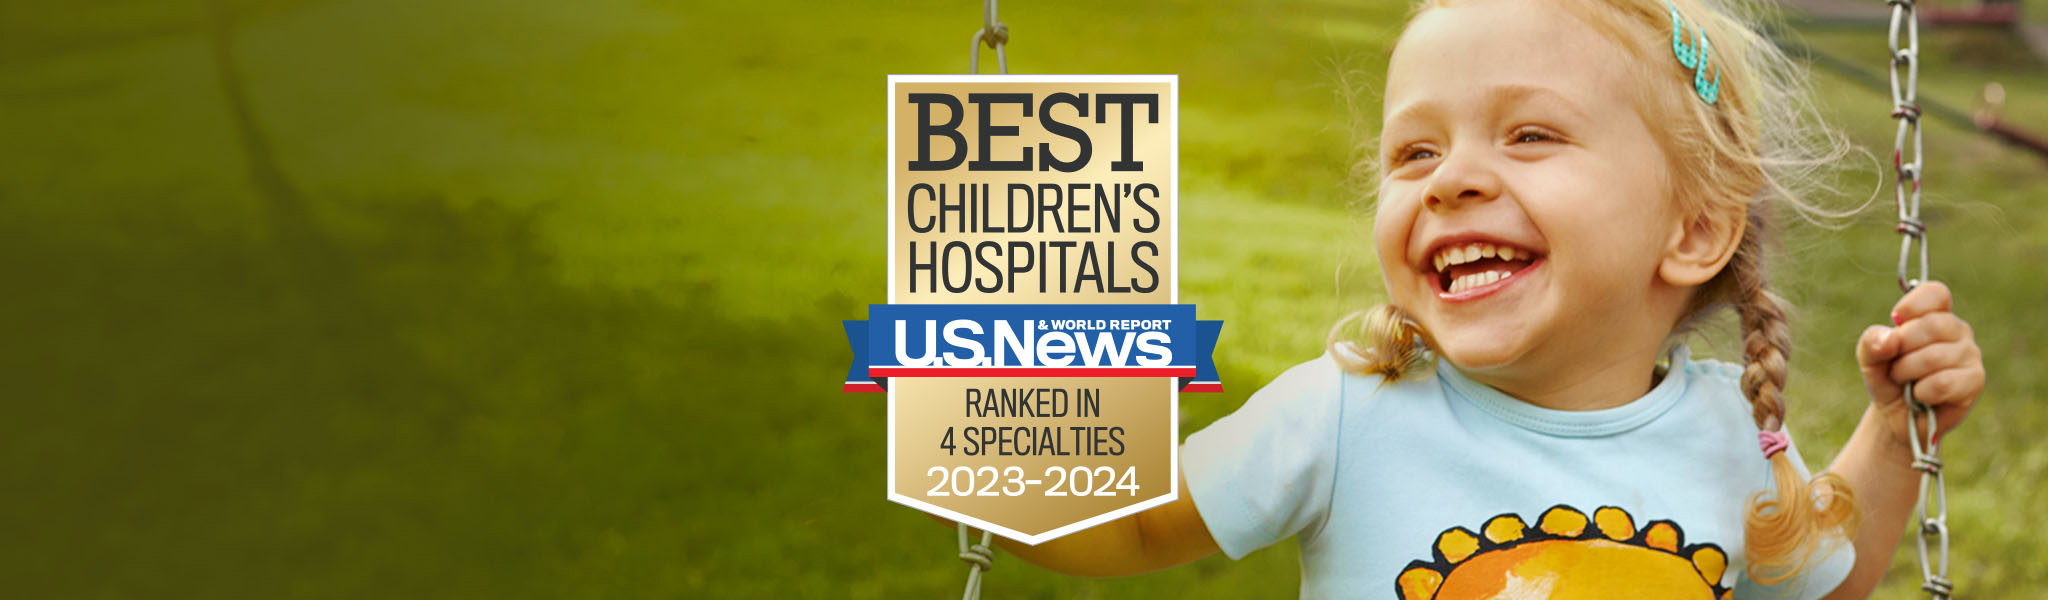 Best Children's Hospitals 2023